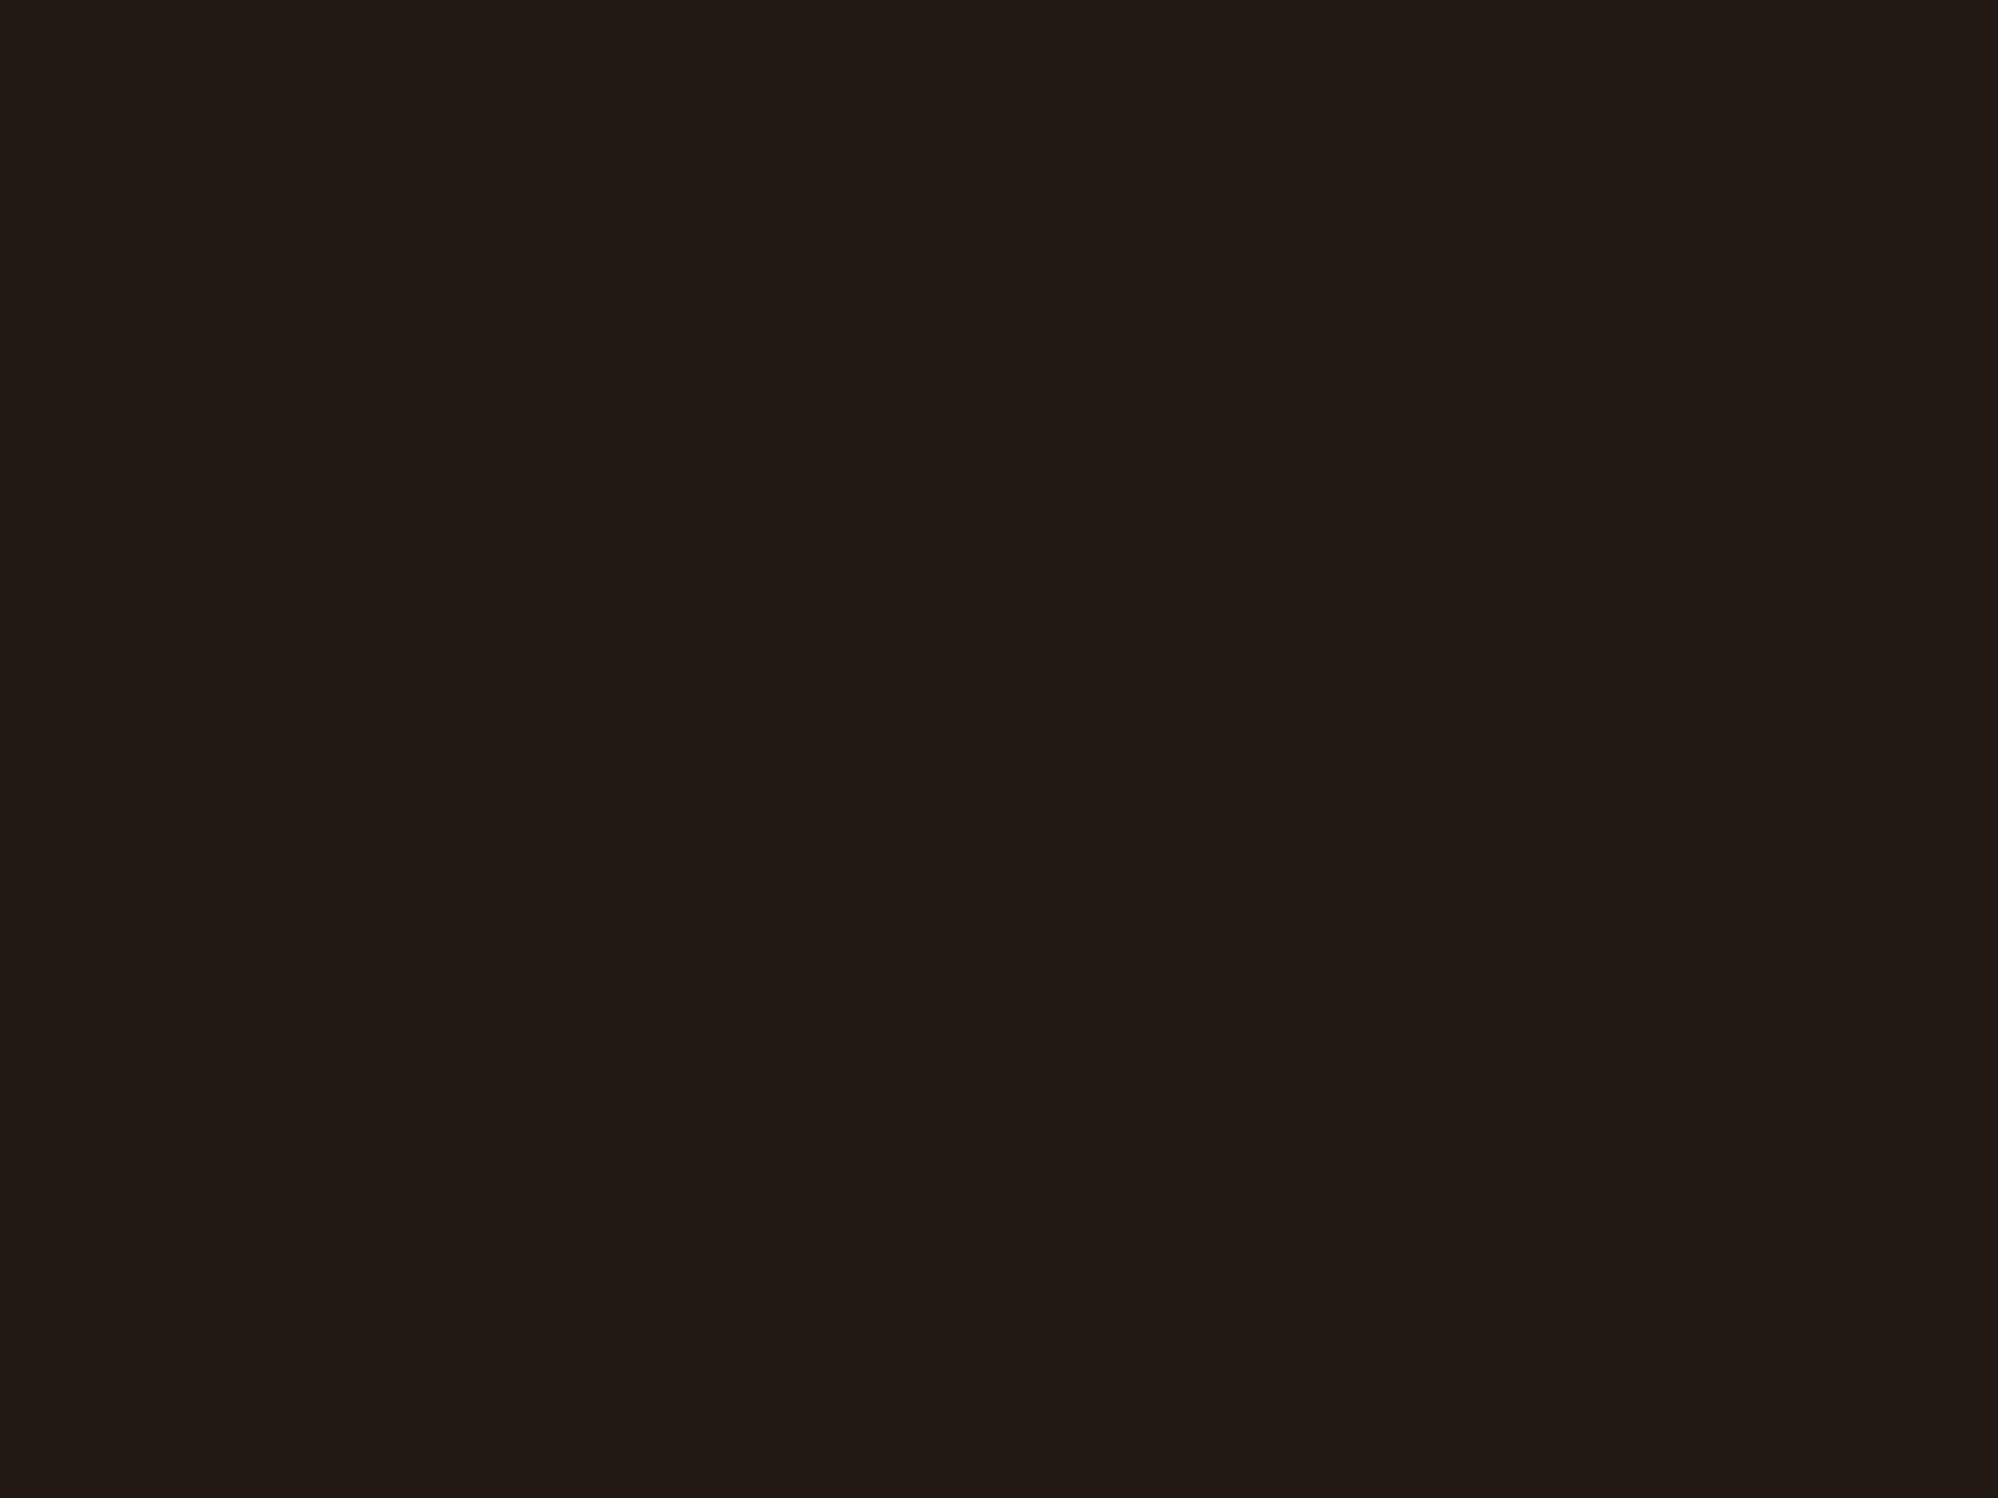 Илларион Прянишников. Чтение письма в мелочной лавке (фрагмент). 1864. Государственная Третьяковская галерея, Москва